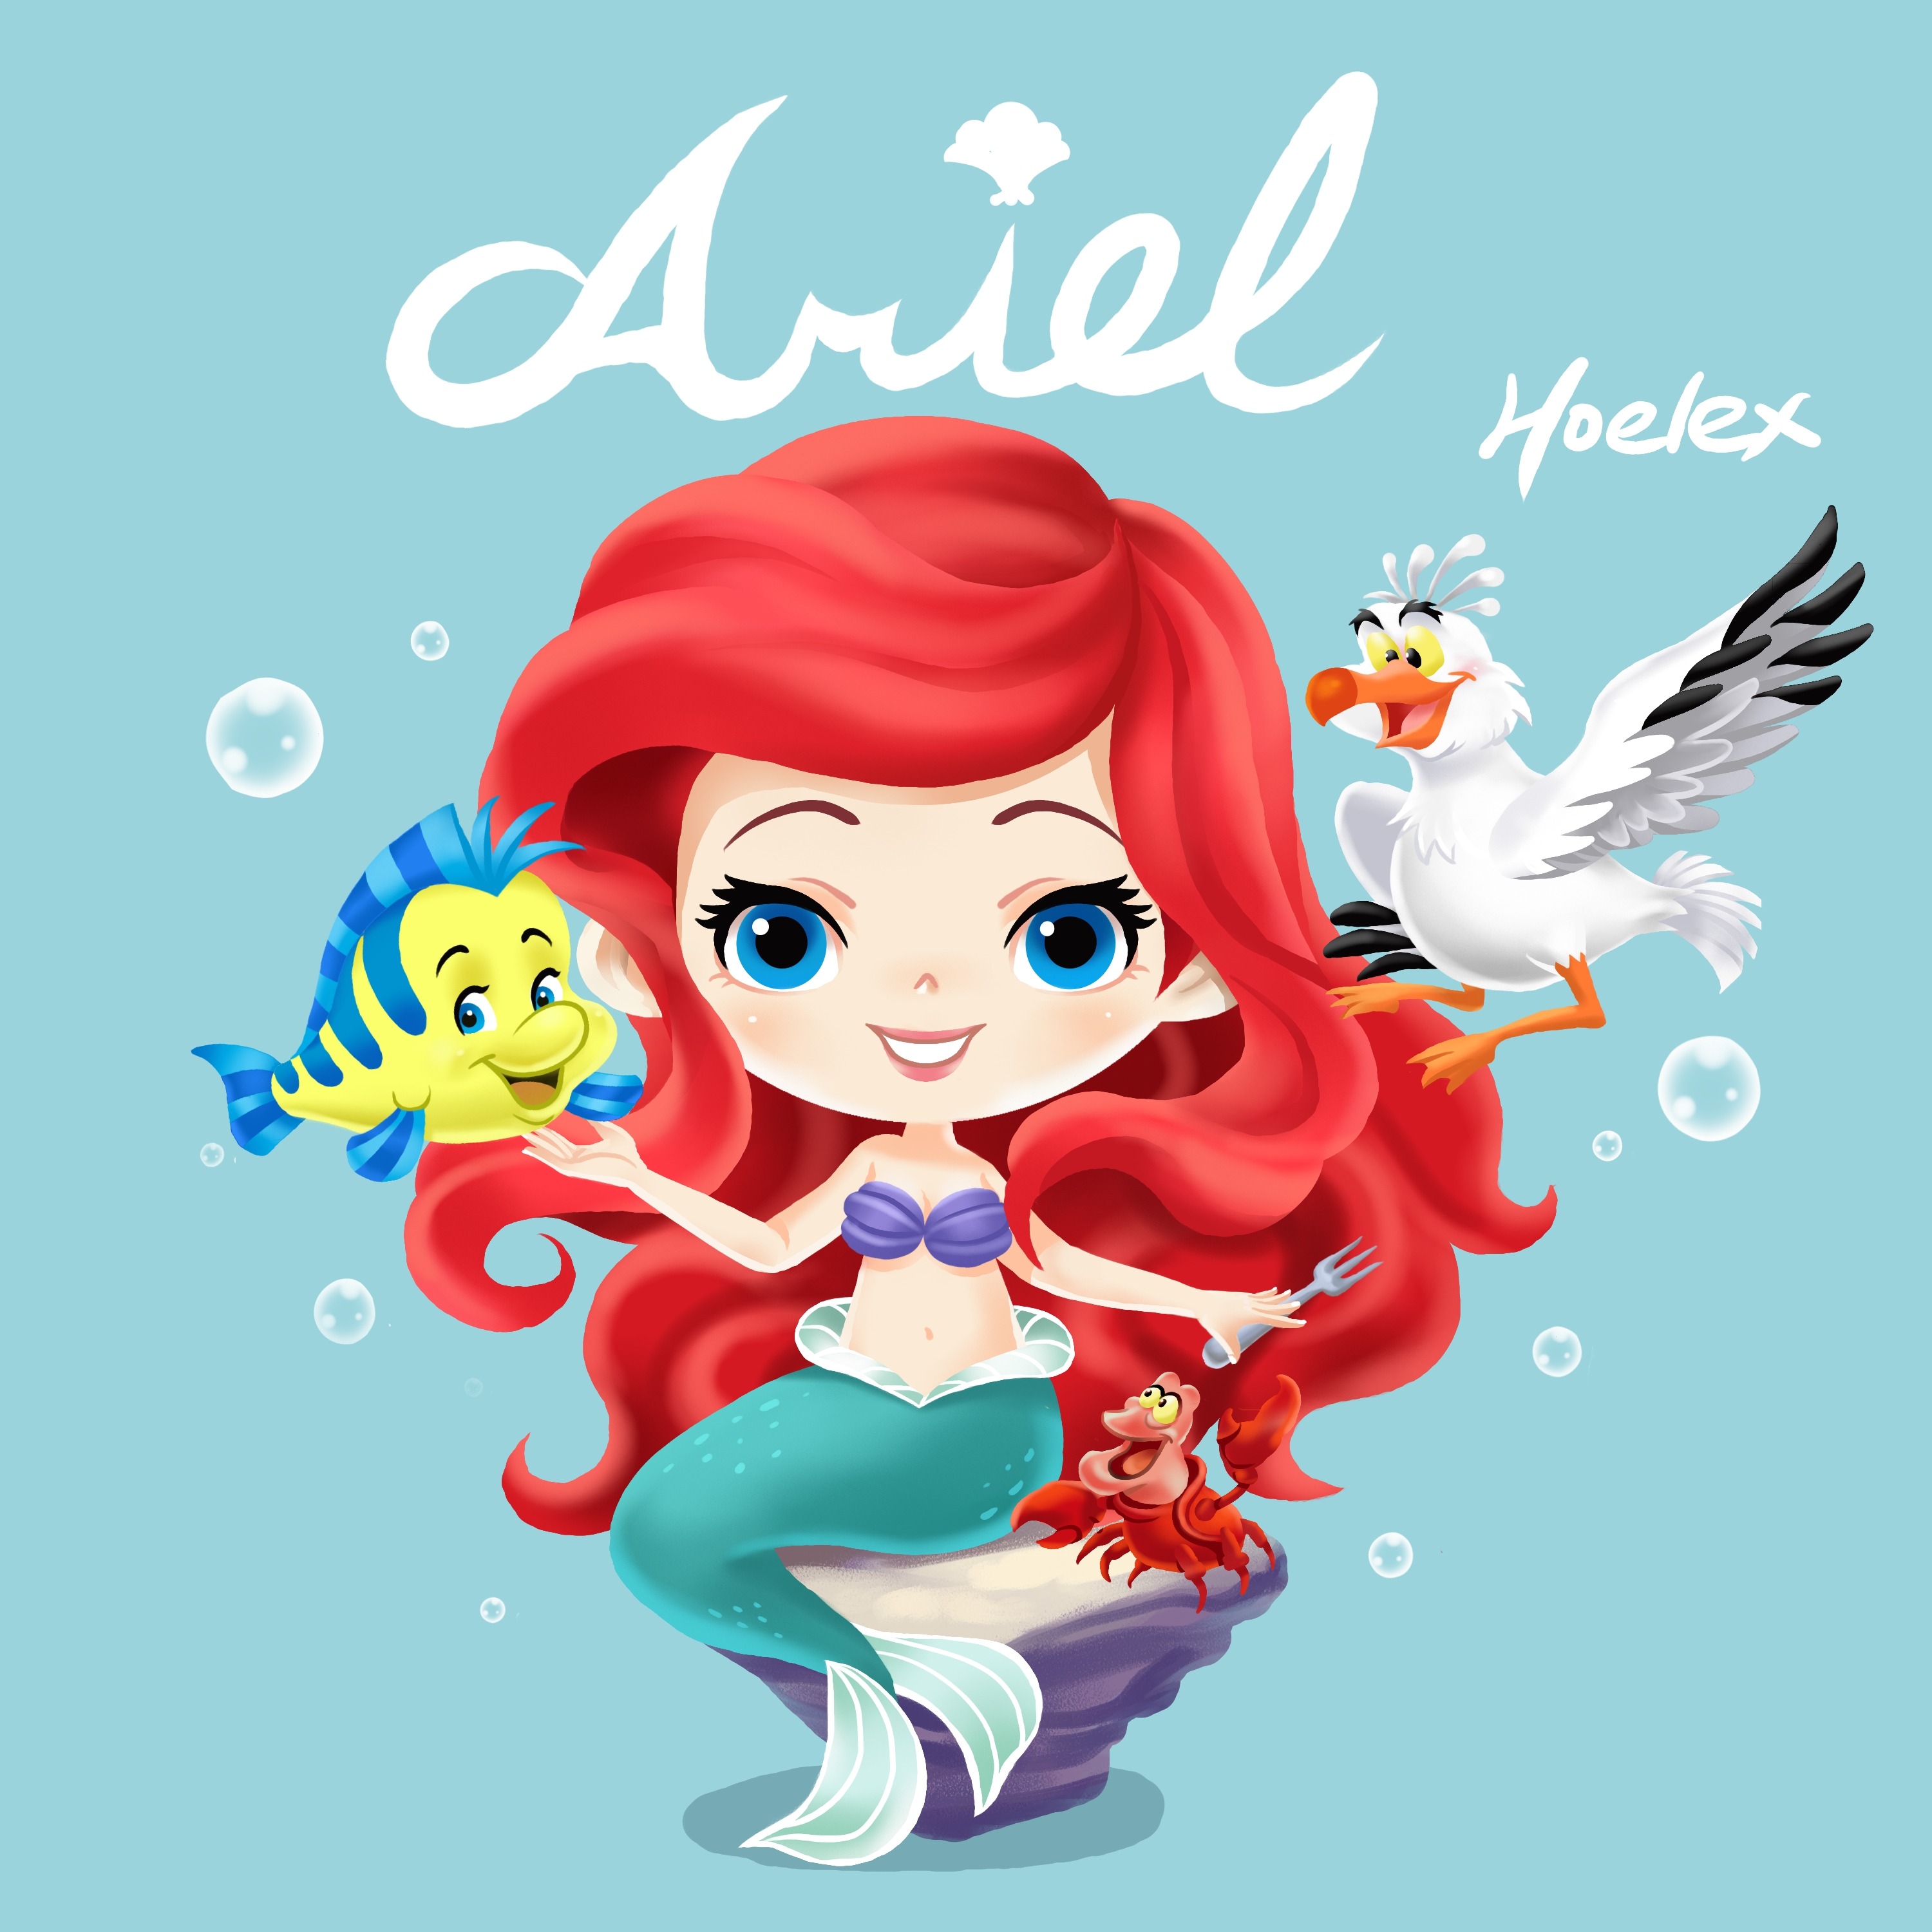 二等身Q版-The Little Mermaid小美人魚-Ariel愛麗兒-HOELEX.jpg